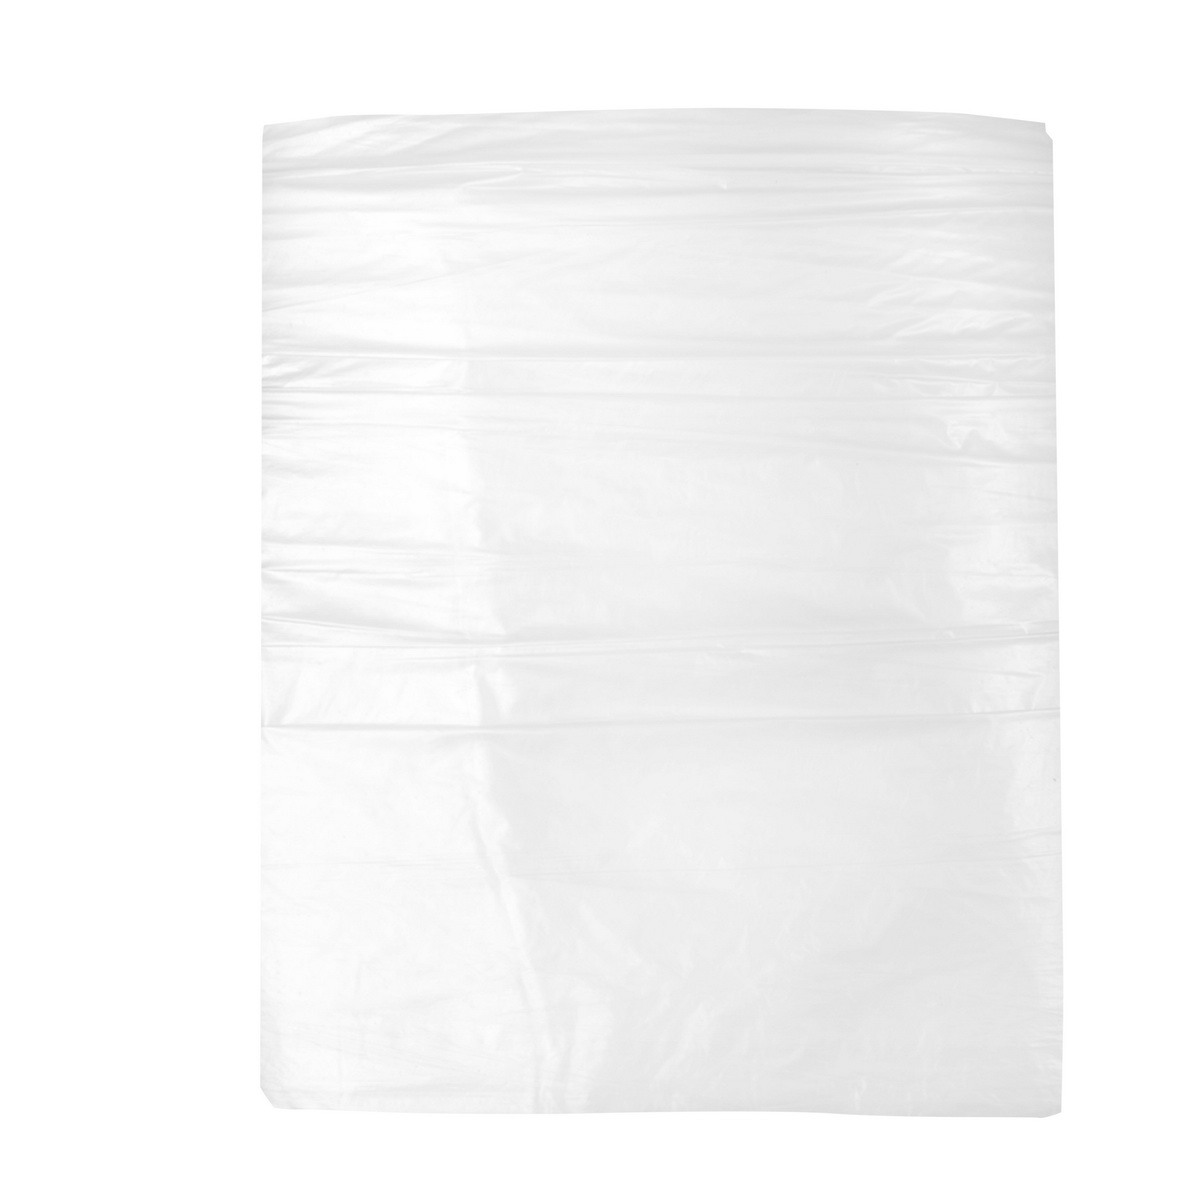 Drop sheet 4x5m (13.1x16.5 ft) 